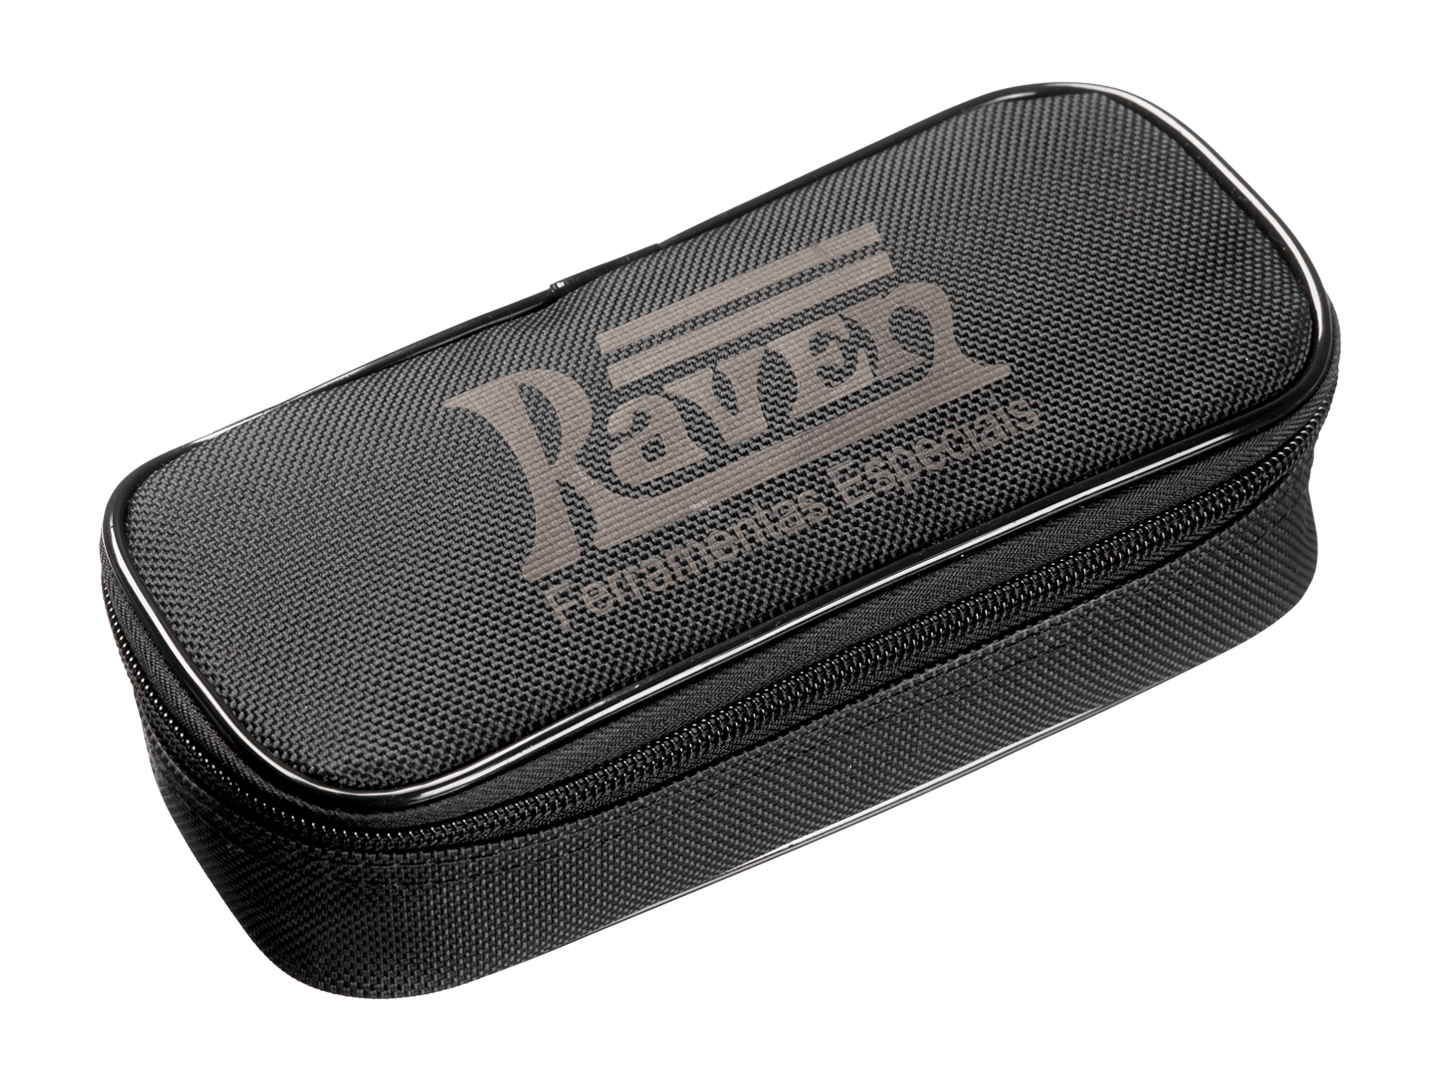 Produto Raven 108908 - Pinça amperimétrica acessória do Scanner 3 Scope 108900 / 901 para leituras de 0A a 40A e 0A a 400A (AC / DC) em cabos com espessura de até 23mm. Produto fornecido em um estojo de tecido.<ul></ul> - Elétrica